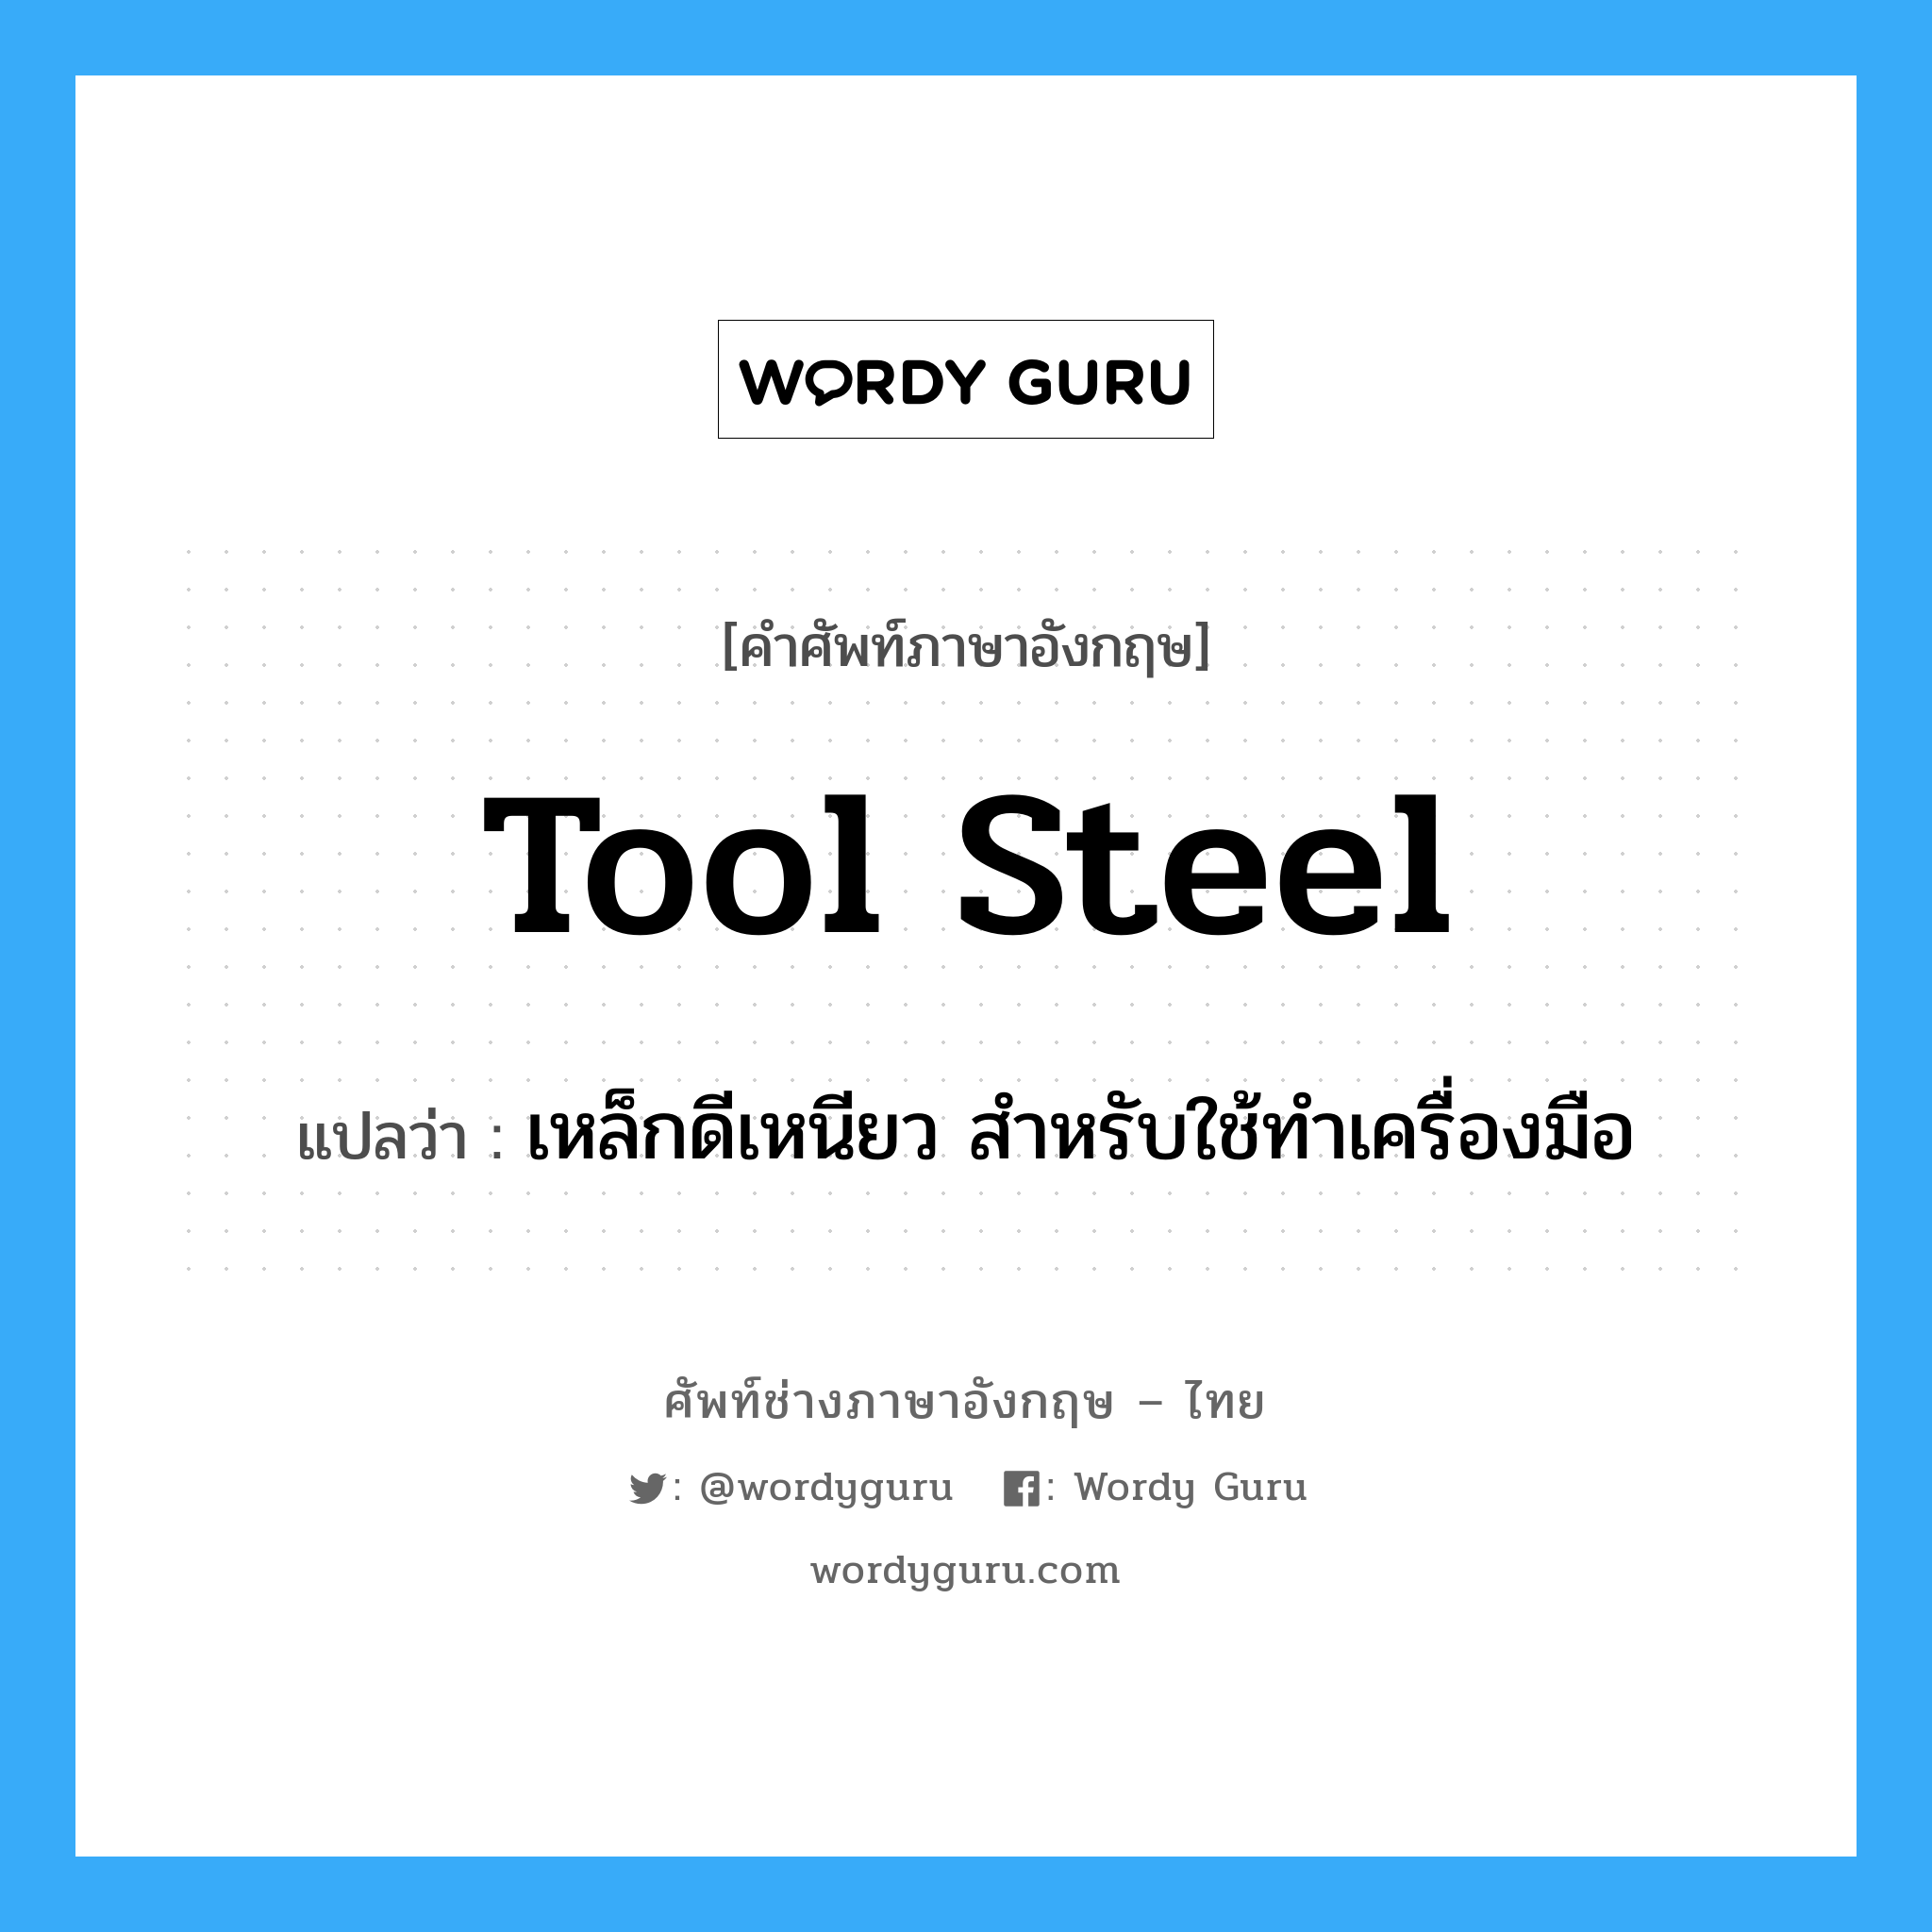 เหล็กดีเหนียว สำหรับใช้ทำเครื่องมือ ภาษาอังกฤษ?, คำศัพท์ช่างภาษาอังกฤษ - ไทย เหล็กดีเหนียว สำหรับใช้ทำเครื่องมือ คำศัพท์ภาษาอังกฤษ เหล็กดีเหนียว สำหรับใช้ทำเครื่องมือ แปลว่า tool steel